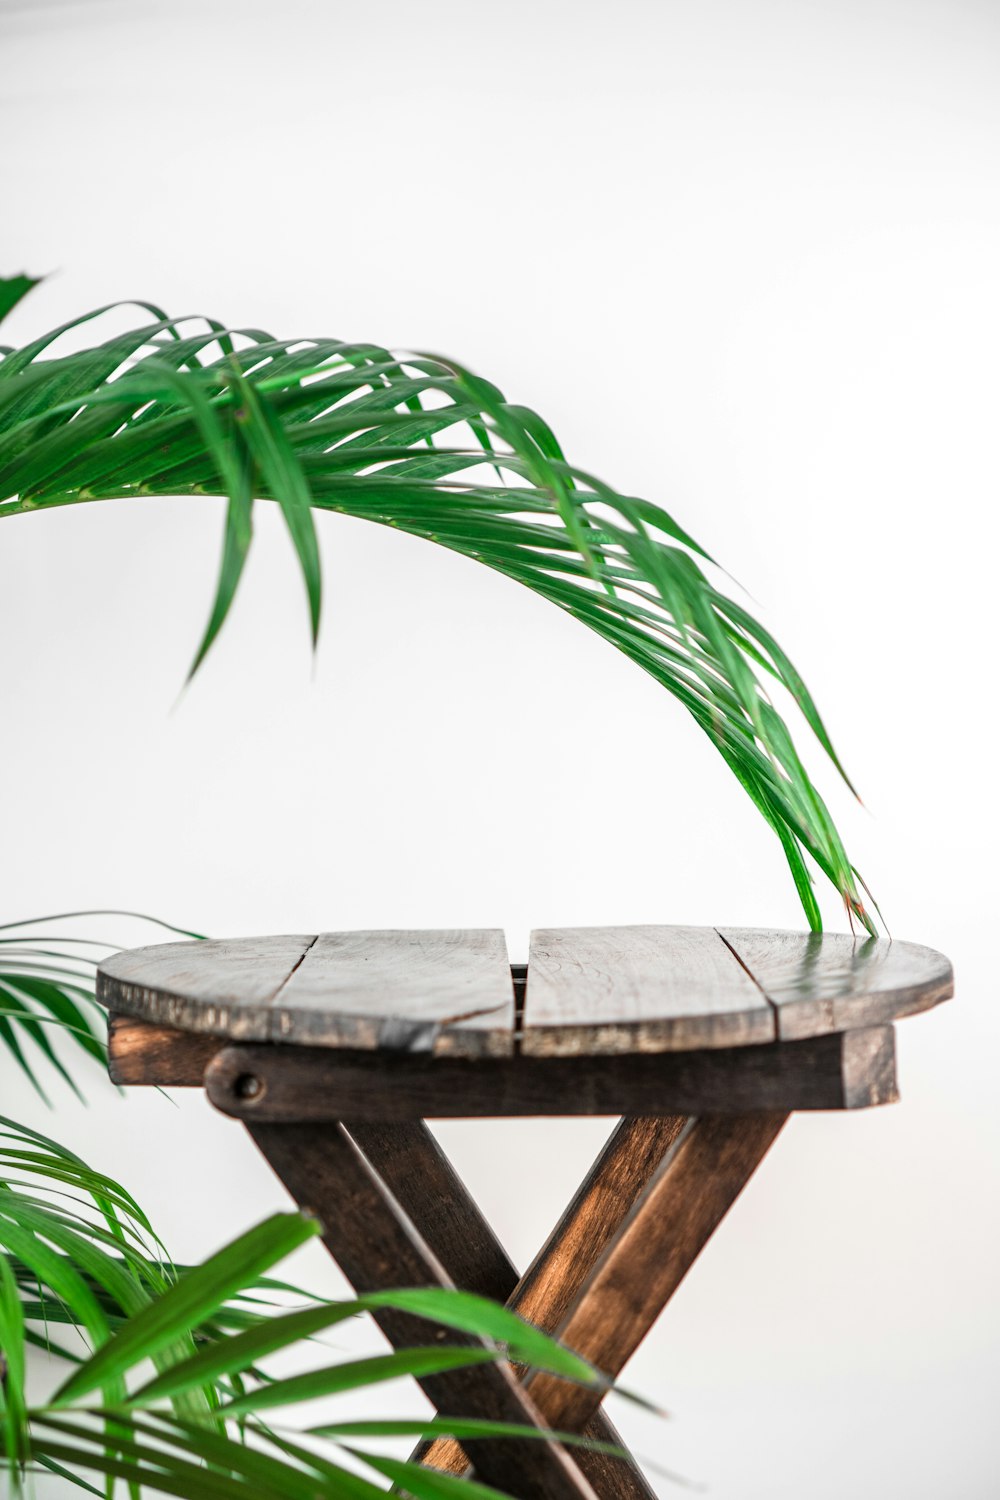 Plante de palmier vert sur table en bois brun